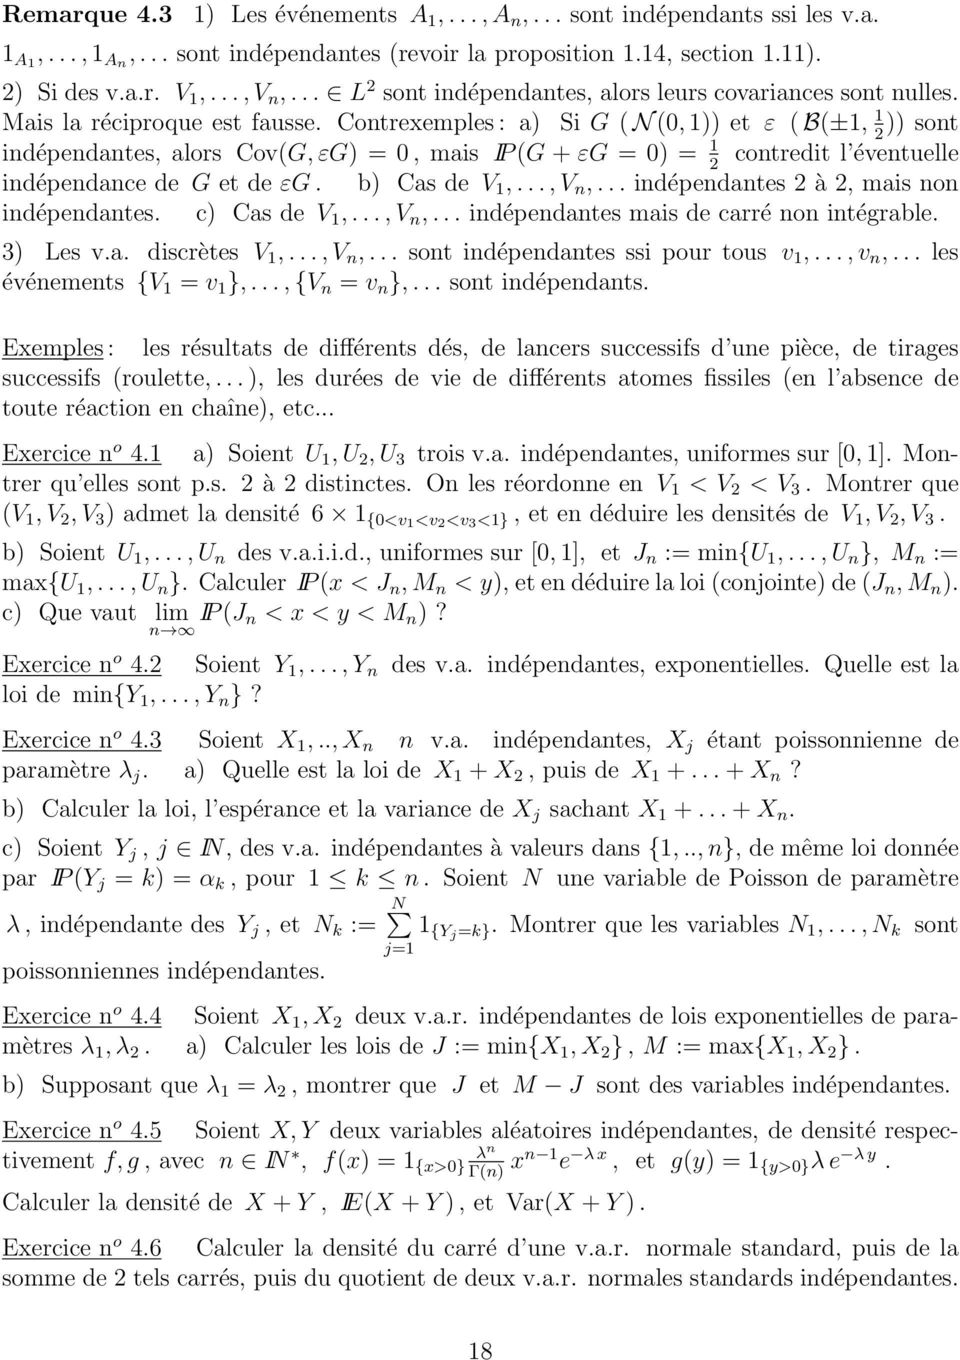 Contrexemples : a Si G ( N (, 1 et ε ( B(±1, 1 sont 2 indépendantes, alors Cov(G, εg =, mais IP (G + εg = = 1 contredit l éventuelle 2 indépendance de G et de εg. b Cas de V 1,..., V n,.